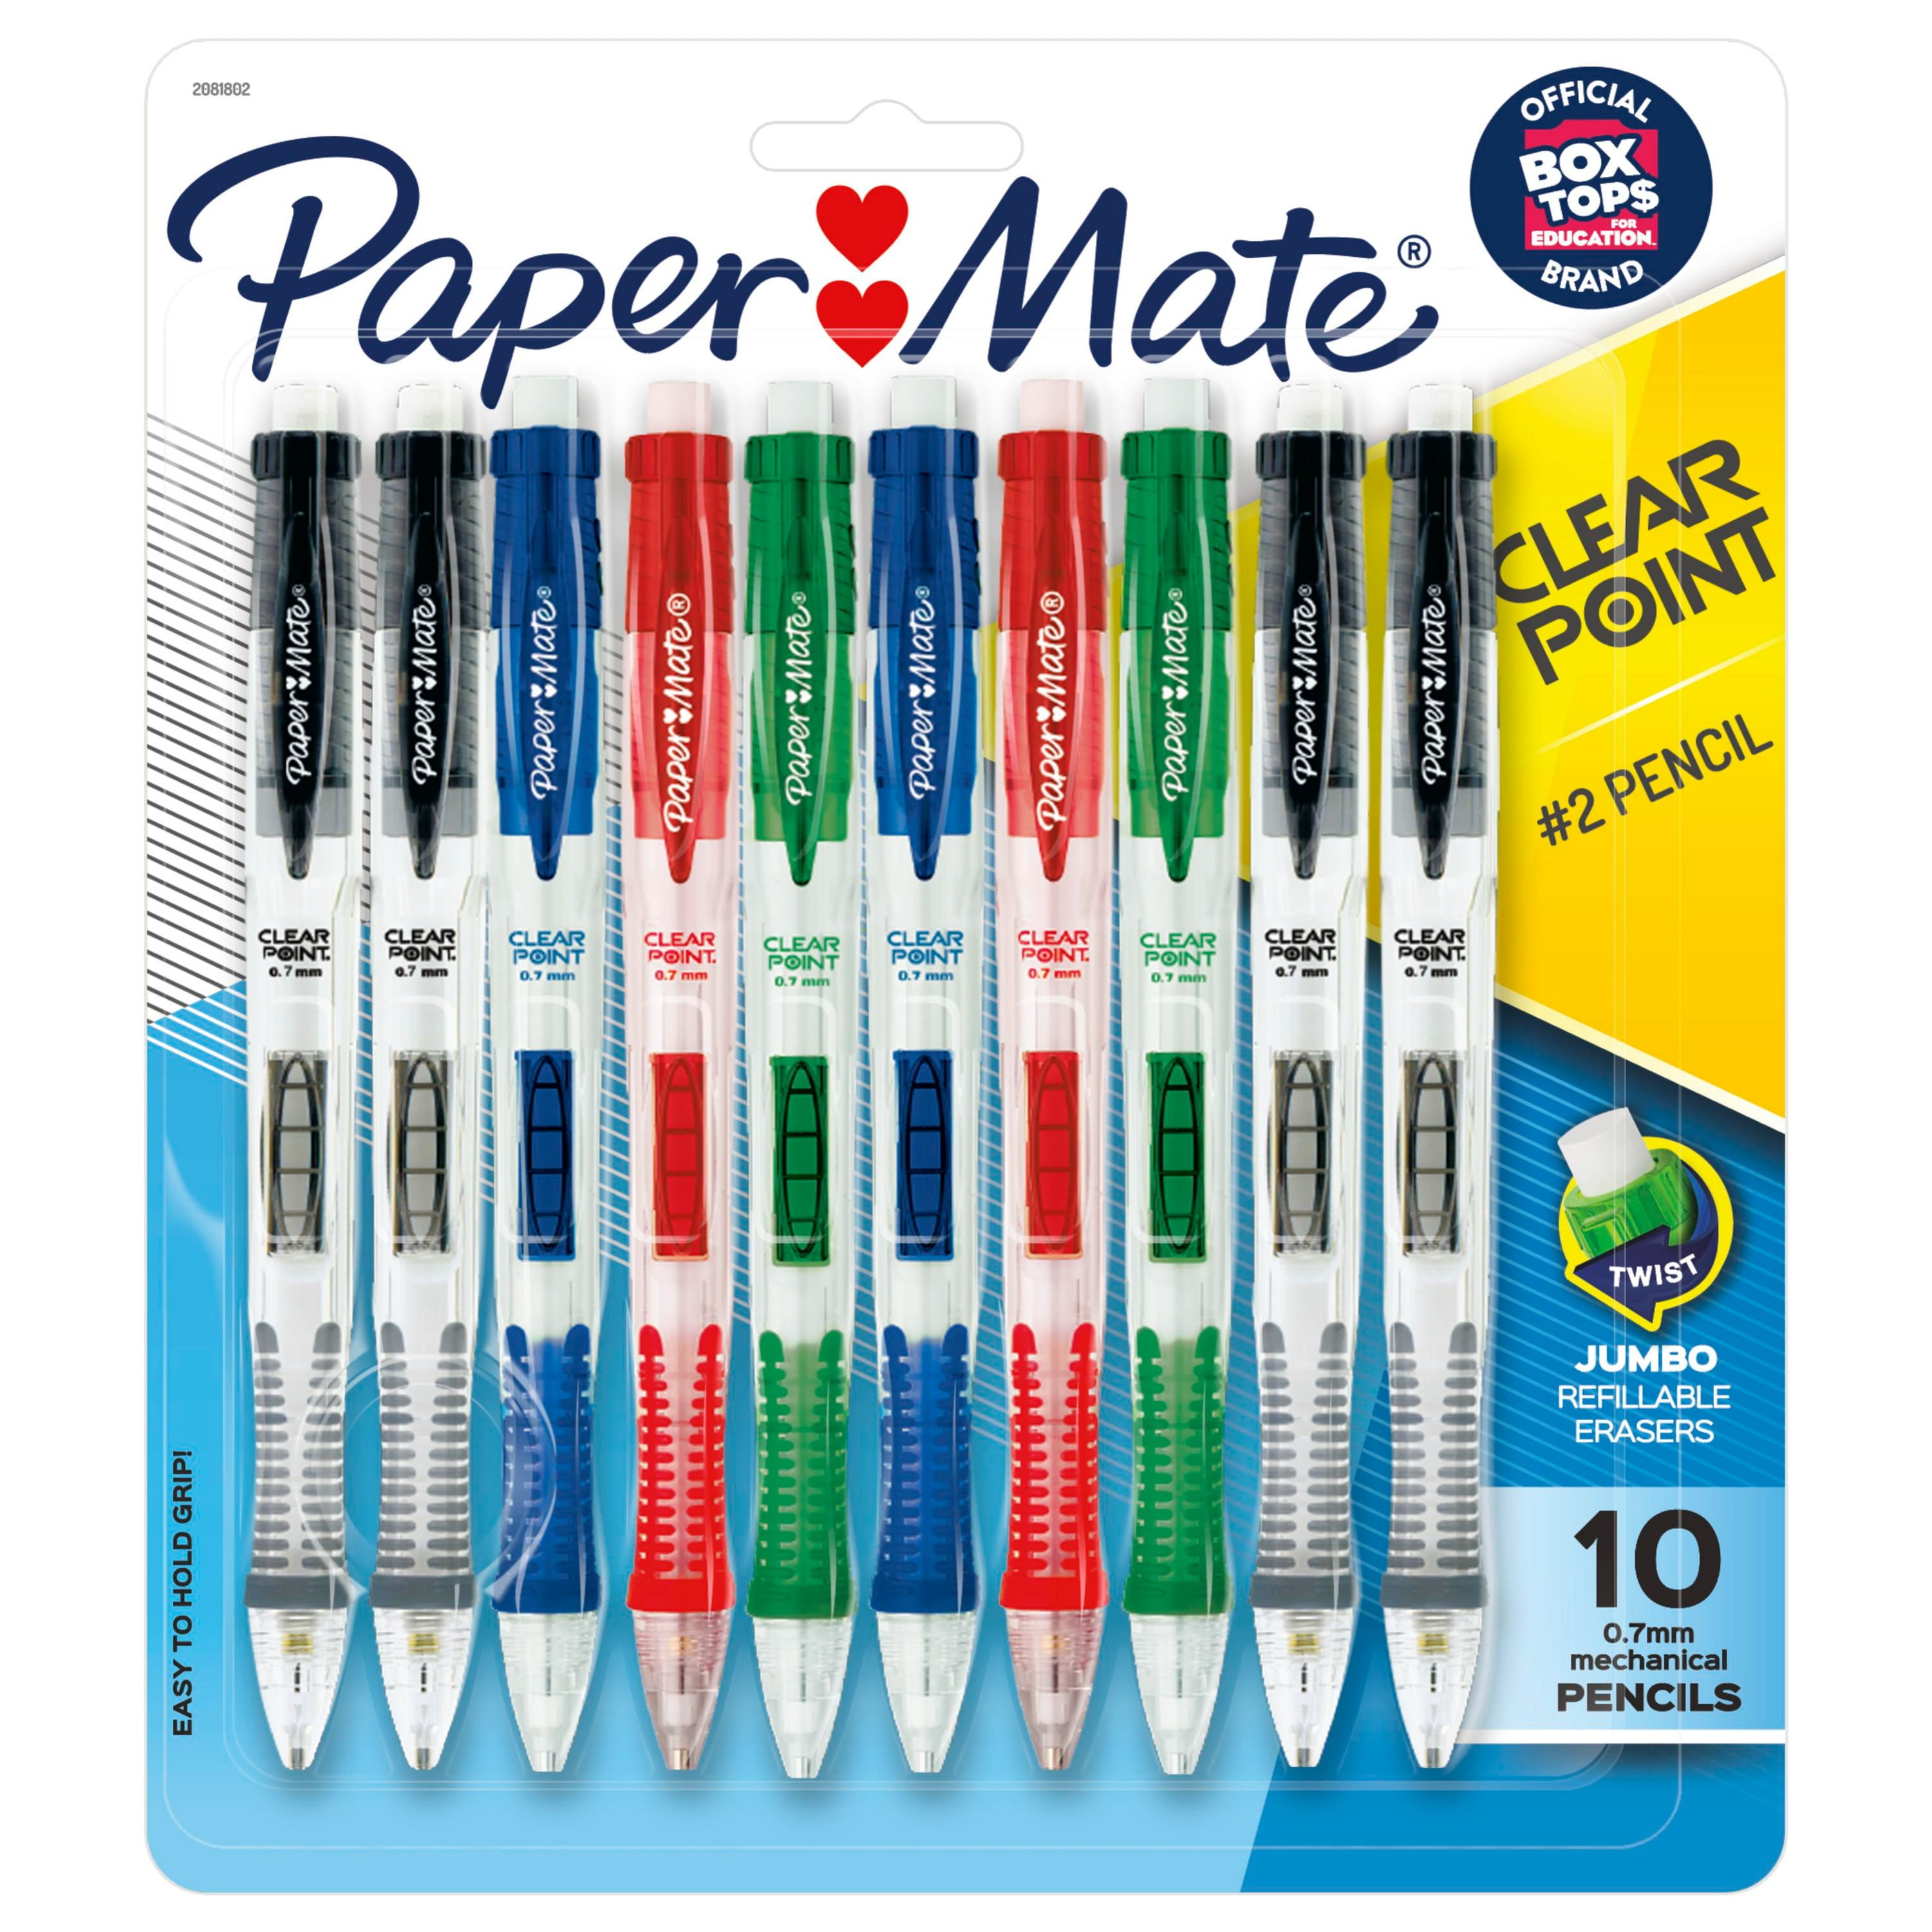 uitlokken Doorlaatbaarheid Afhaalmaaltijd Paper Mate Clearpoint Mechanical Pencil, 0.7 mm #2 Pencil Lead, Assorted,  Refillable, 10 Count - Walmart.com